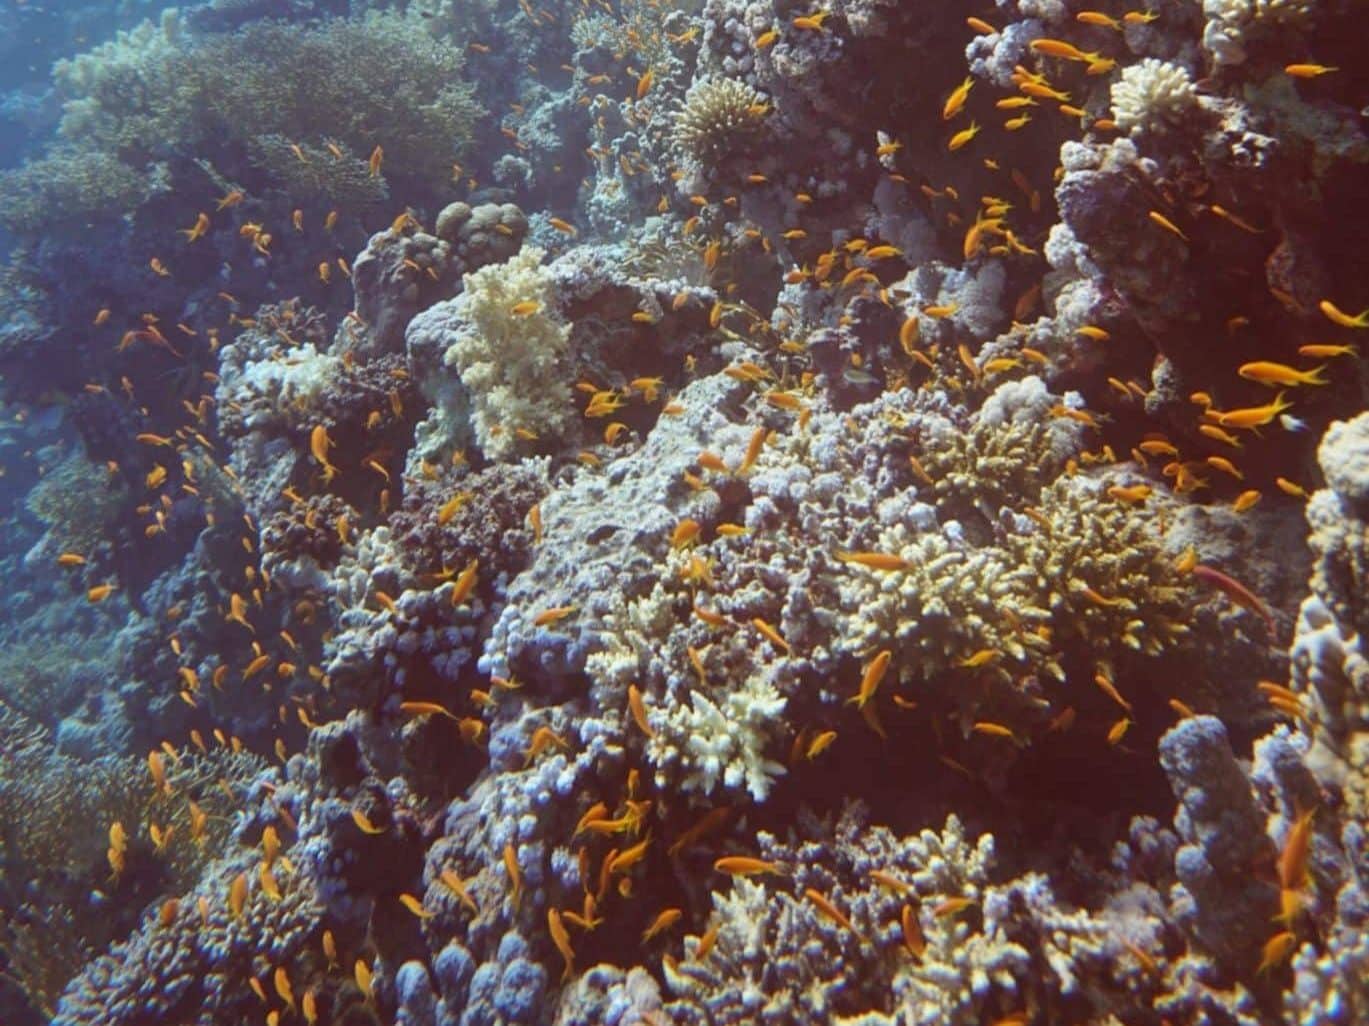 Tauchurlaub: Tipps für alle, die die schönste Zeit des Jahres mit bunten Korallen und atemberaubenden Meerestieren verbringen möchten. Foto: Sascha Tegtmeyer